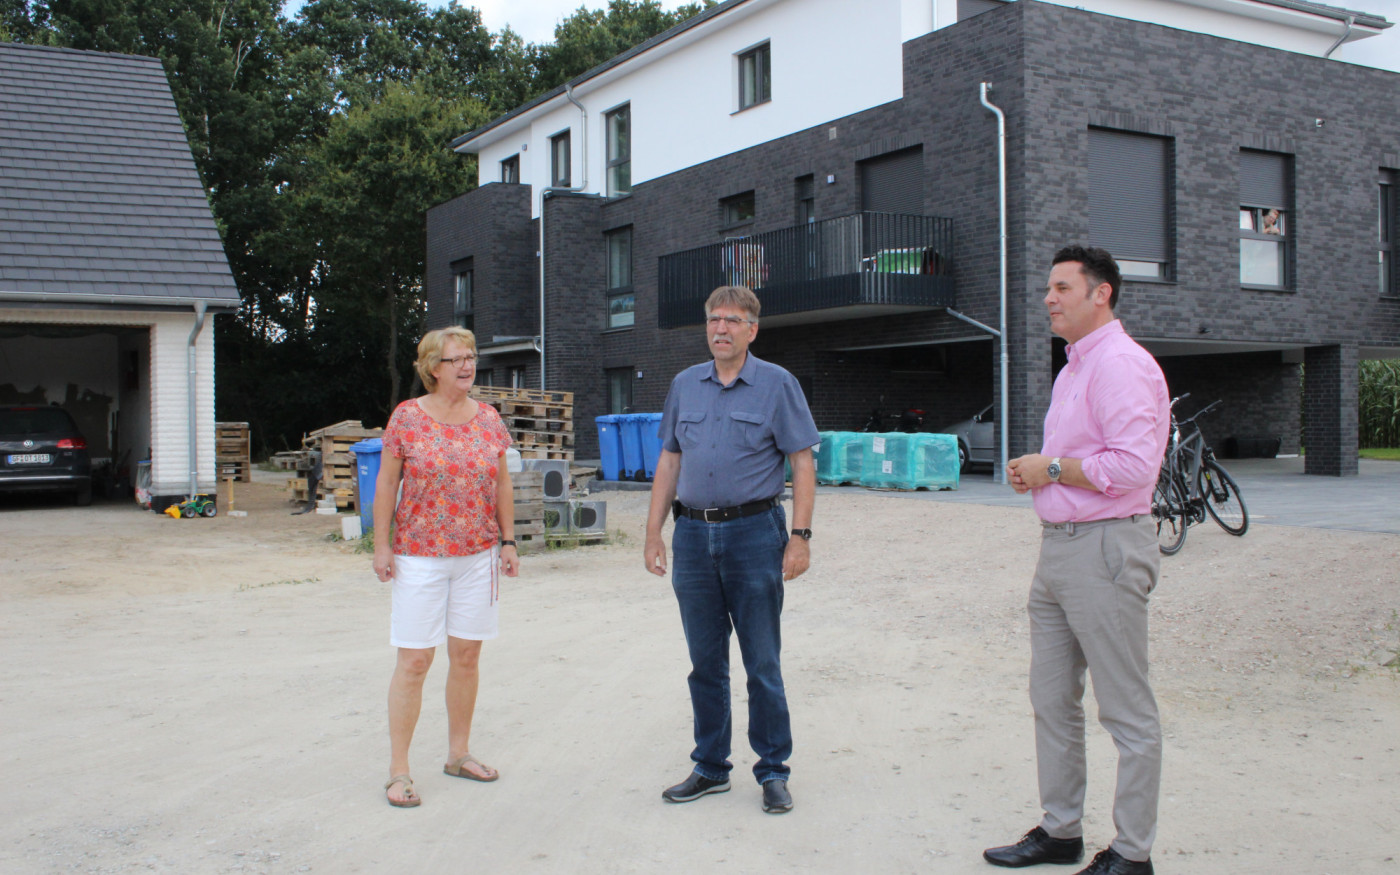 Tag zwei der Sommer-Tour im Video - Gifhorns Bürgermeister Matthias Nerlich besuchte das Neubaugebiet und den Betrieb Fliesen Schacht in Wilsche